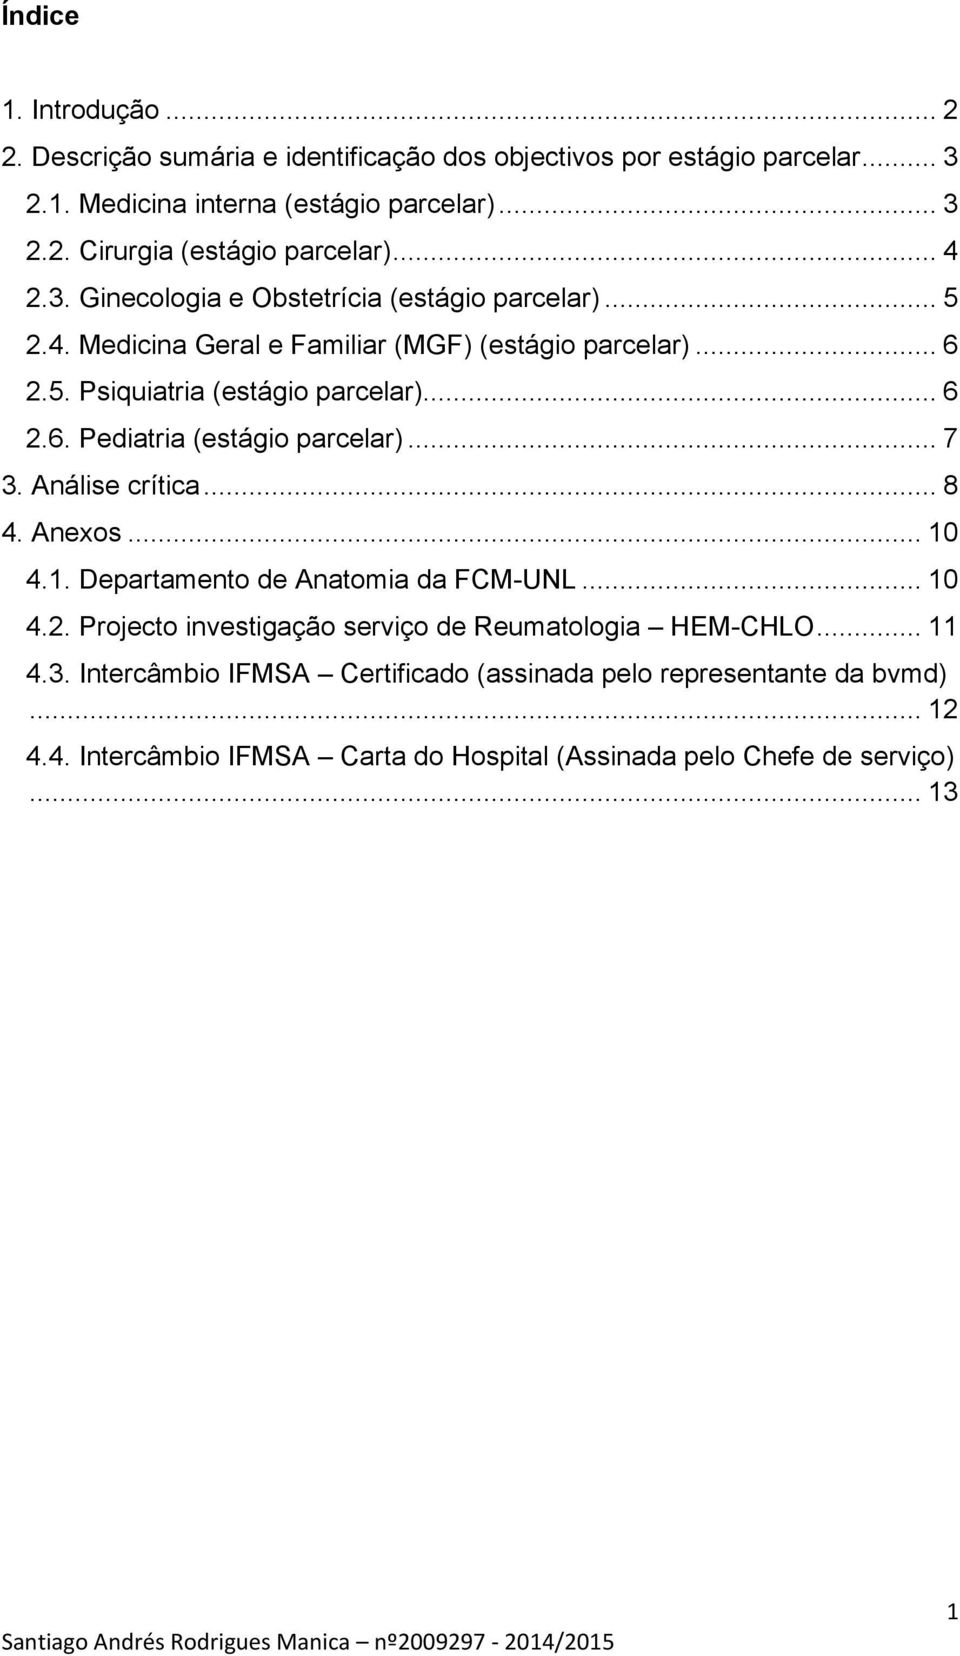 .. 7 3. Análise crítica... 8 4. Anexos... 10 4.1. Departamento de Anatomia da FCM-UNL... 10 4.2. Projecto investigação serviço de Reumatologia HEM-CHLO... 11 4.3. Intercâmbio IFMSA Certificado (assinada pelo representante da bvmd).